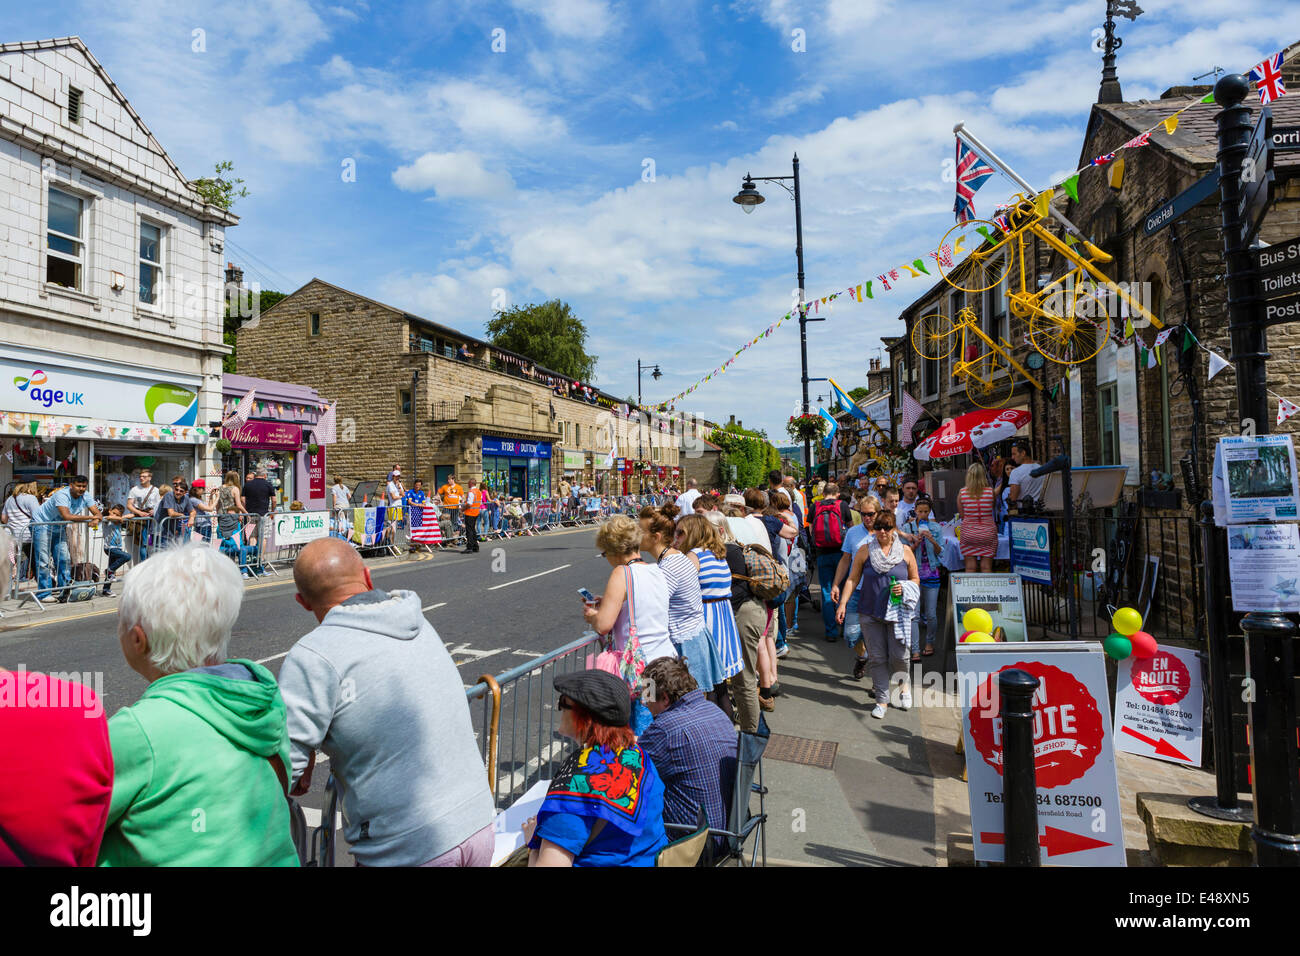 La foule le long du parcours de l'étape 2 de la Tour de France 2014 dans le centre de la ville de West Yorkshire, Holmfirth dans les heures avant l'arrivée des cyclistes, UK Banque D'Images